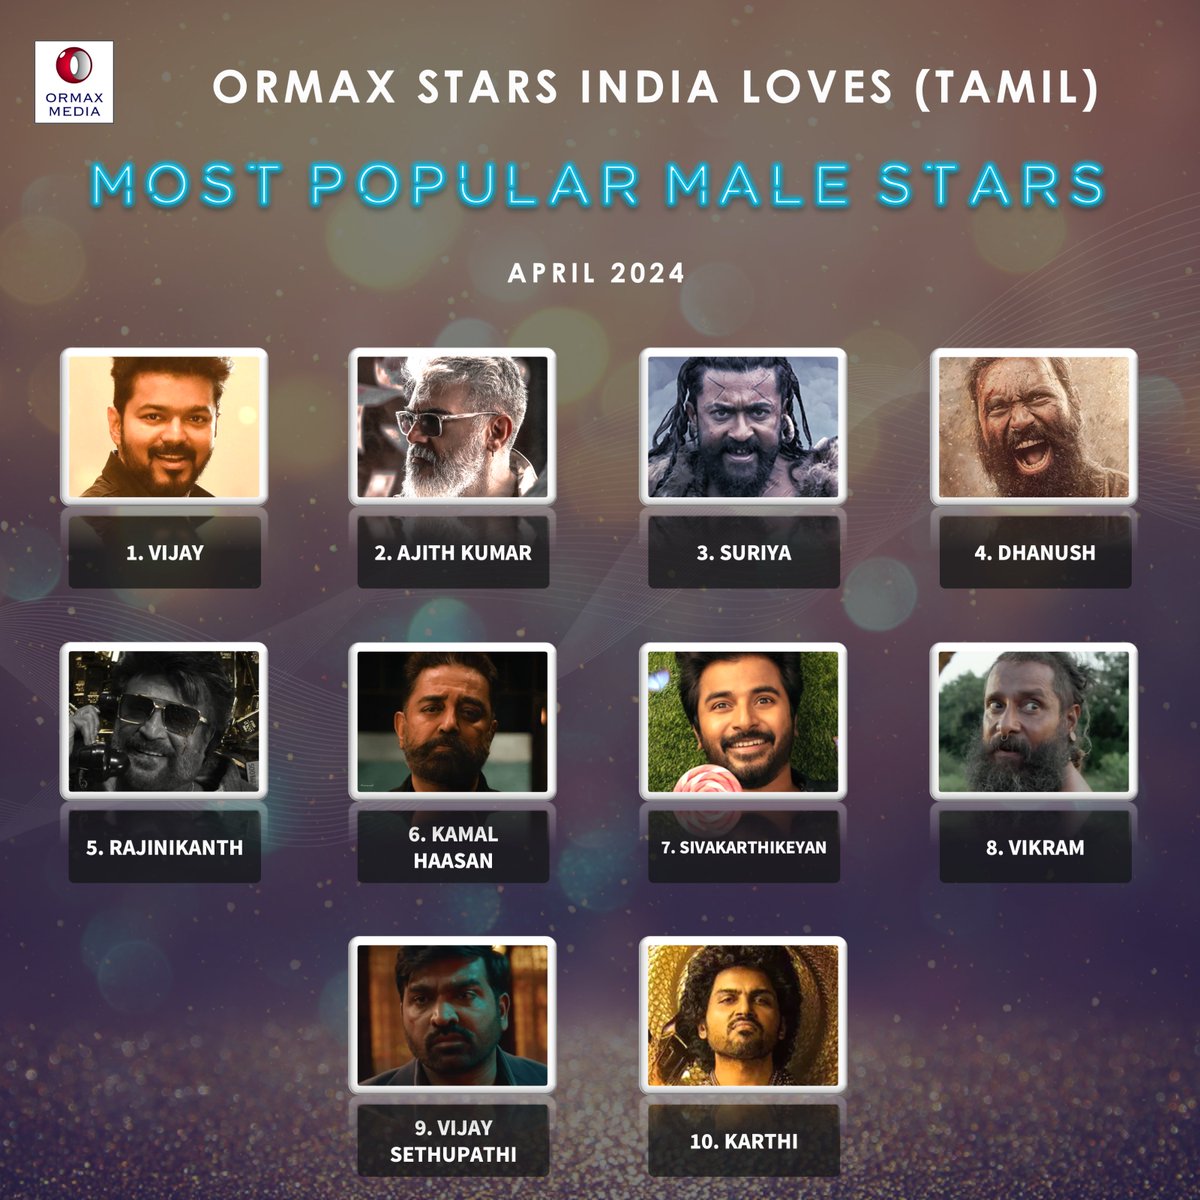 Ormax Stars India Loves: Most popular male Tamil film stars (Apr 2024) #OrmaxSIL